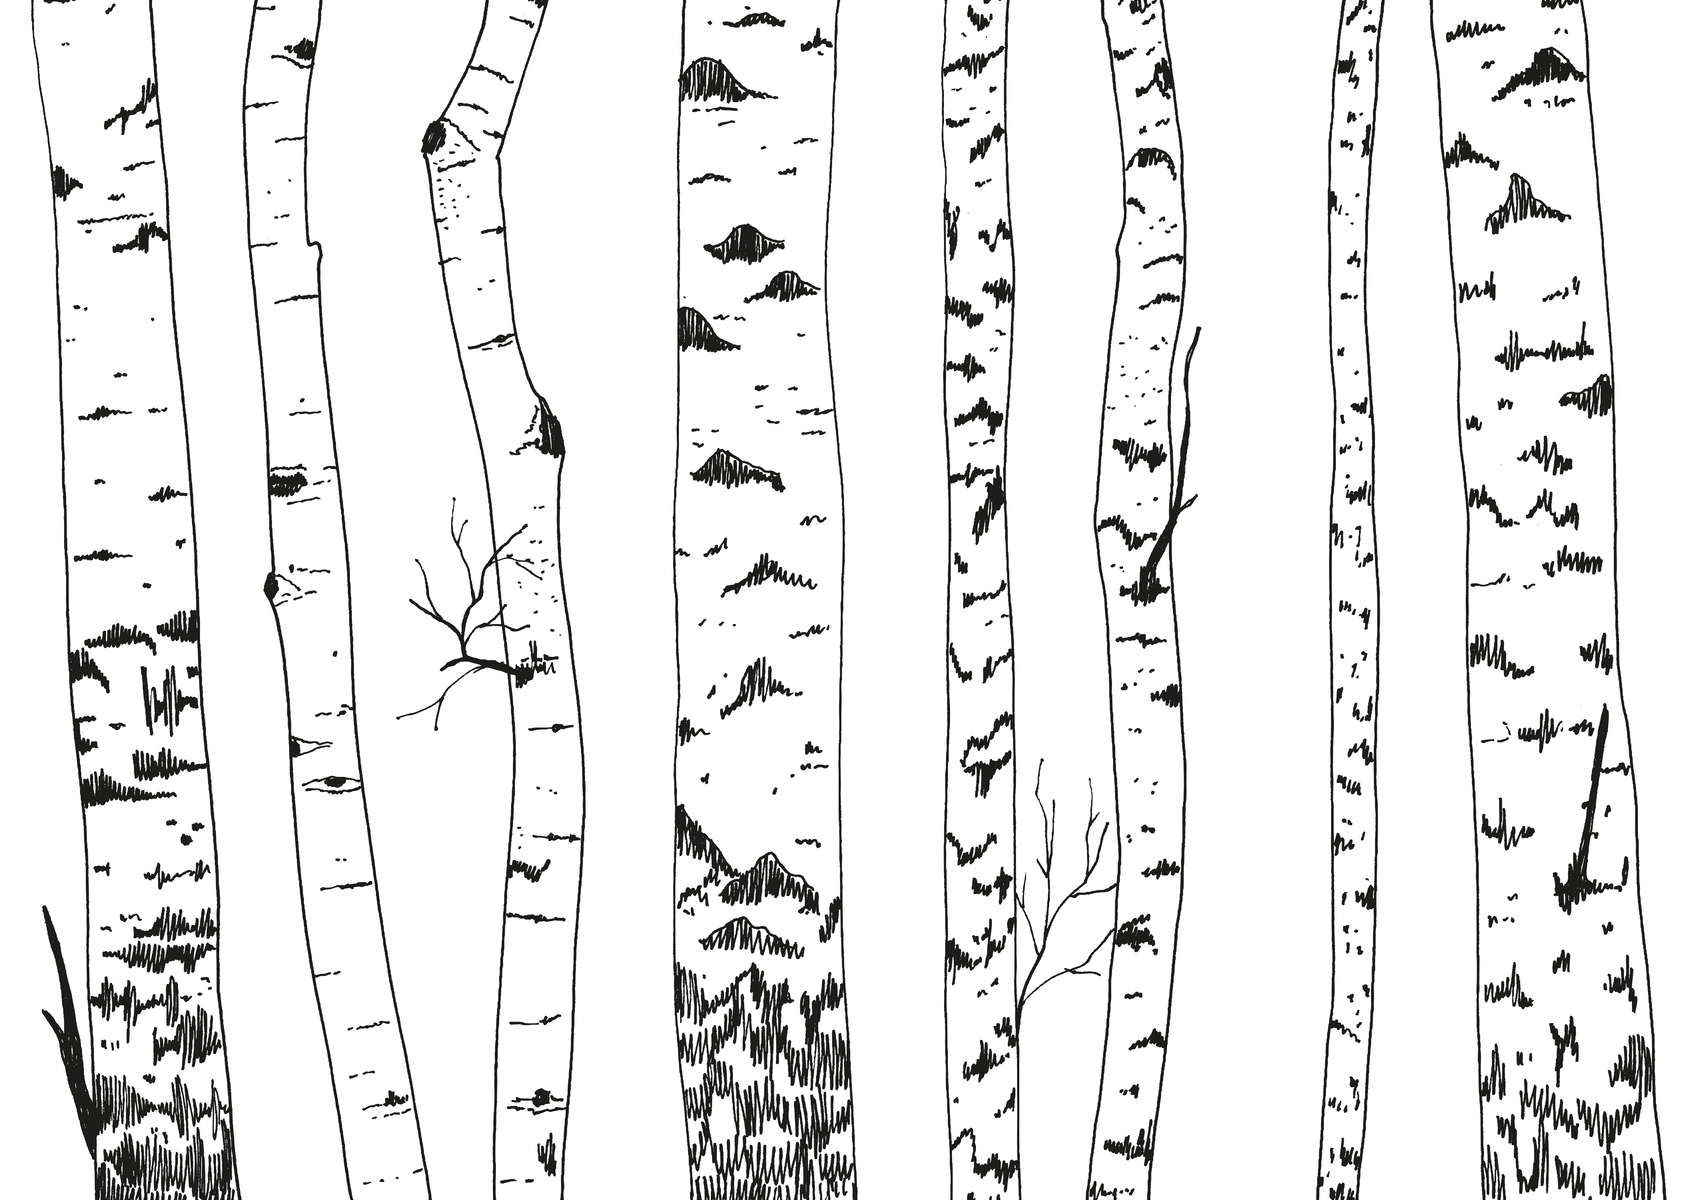             Fotomural bosque de abedules dibujado - no tejido liso y ligeramente brillante
        